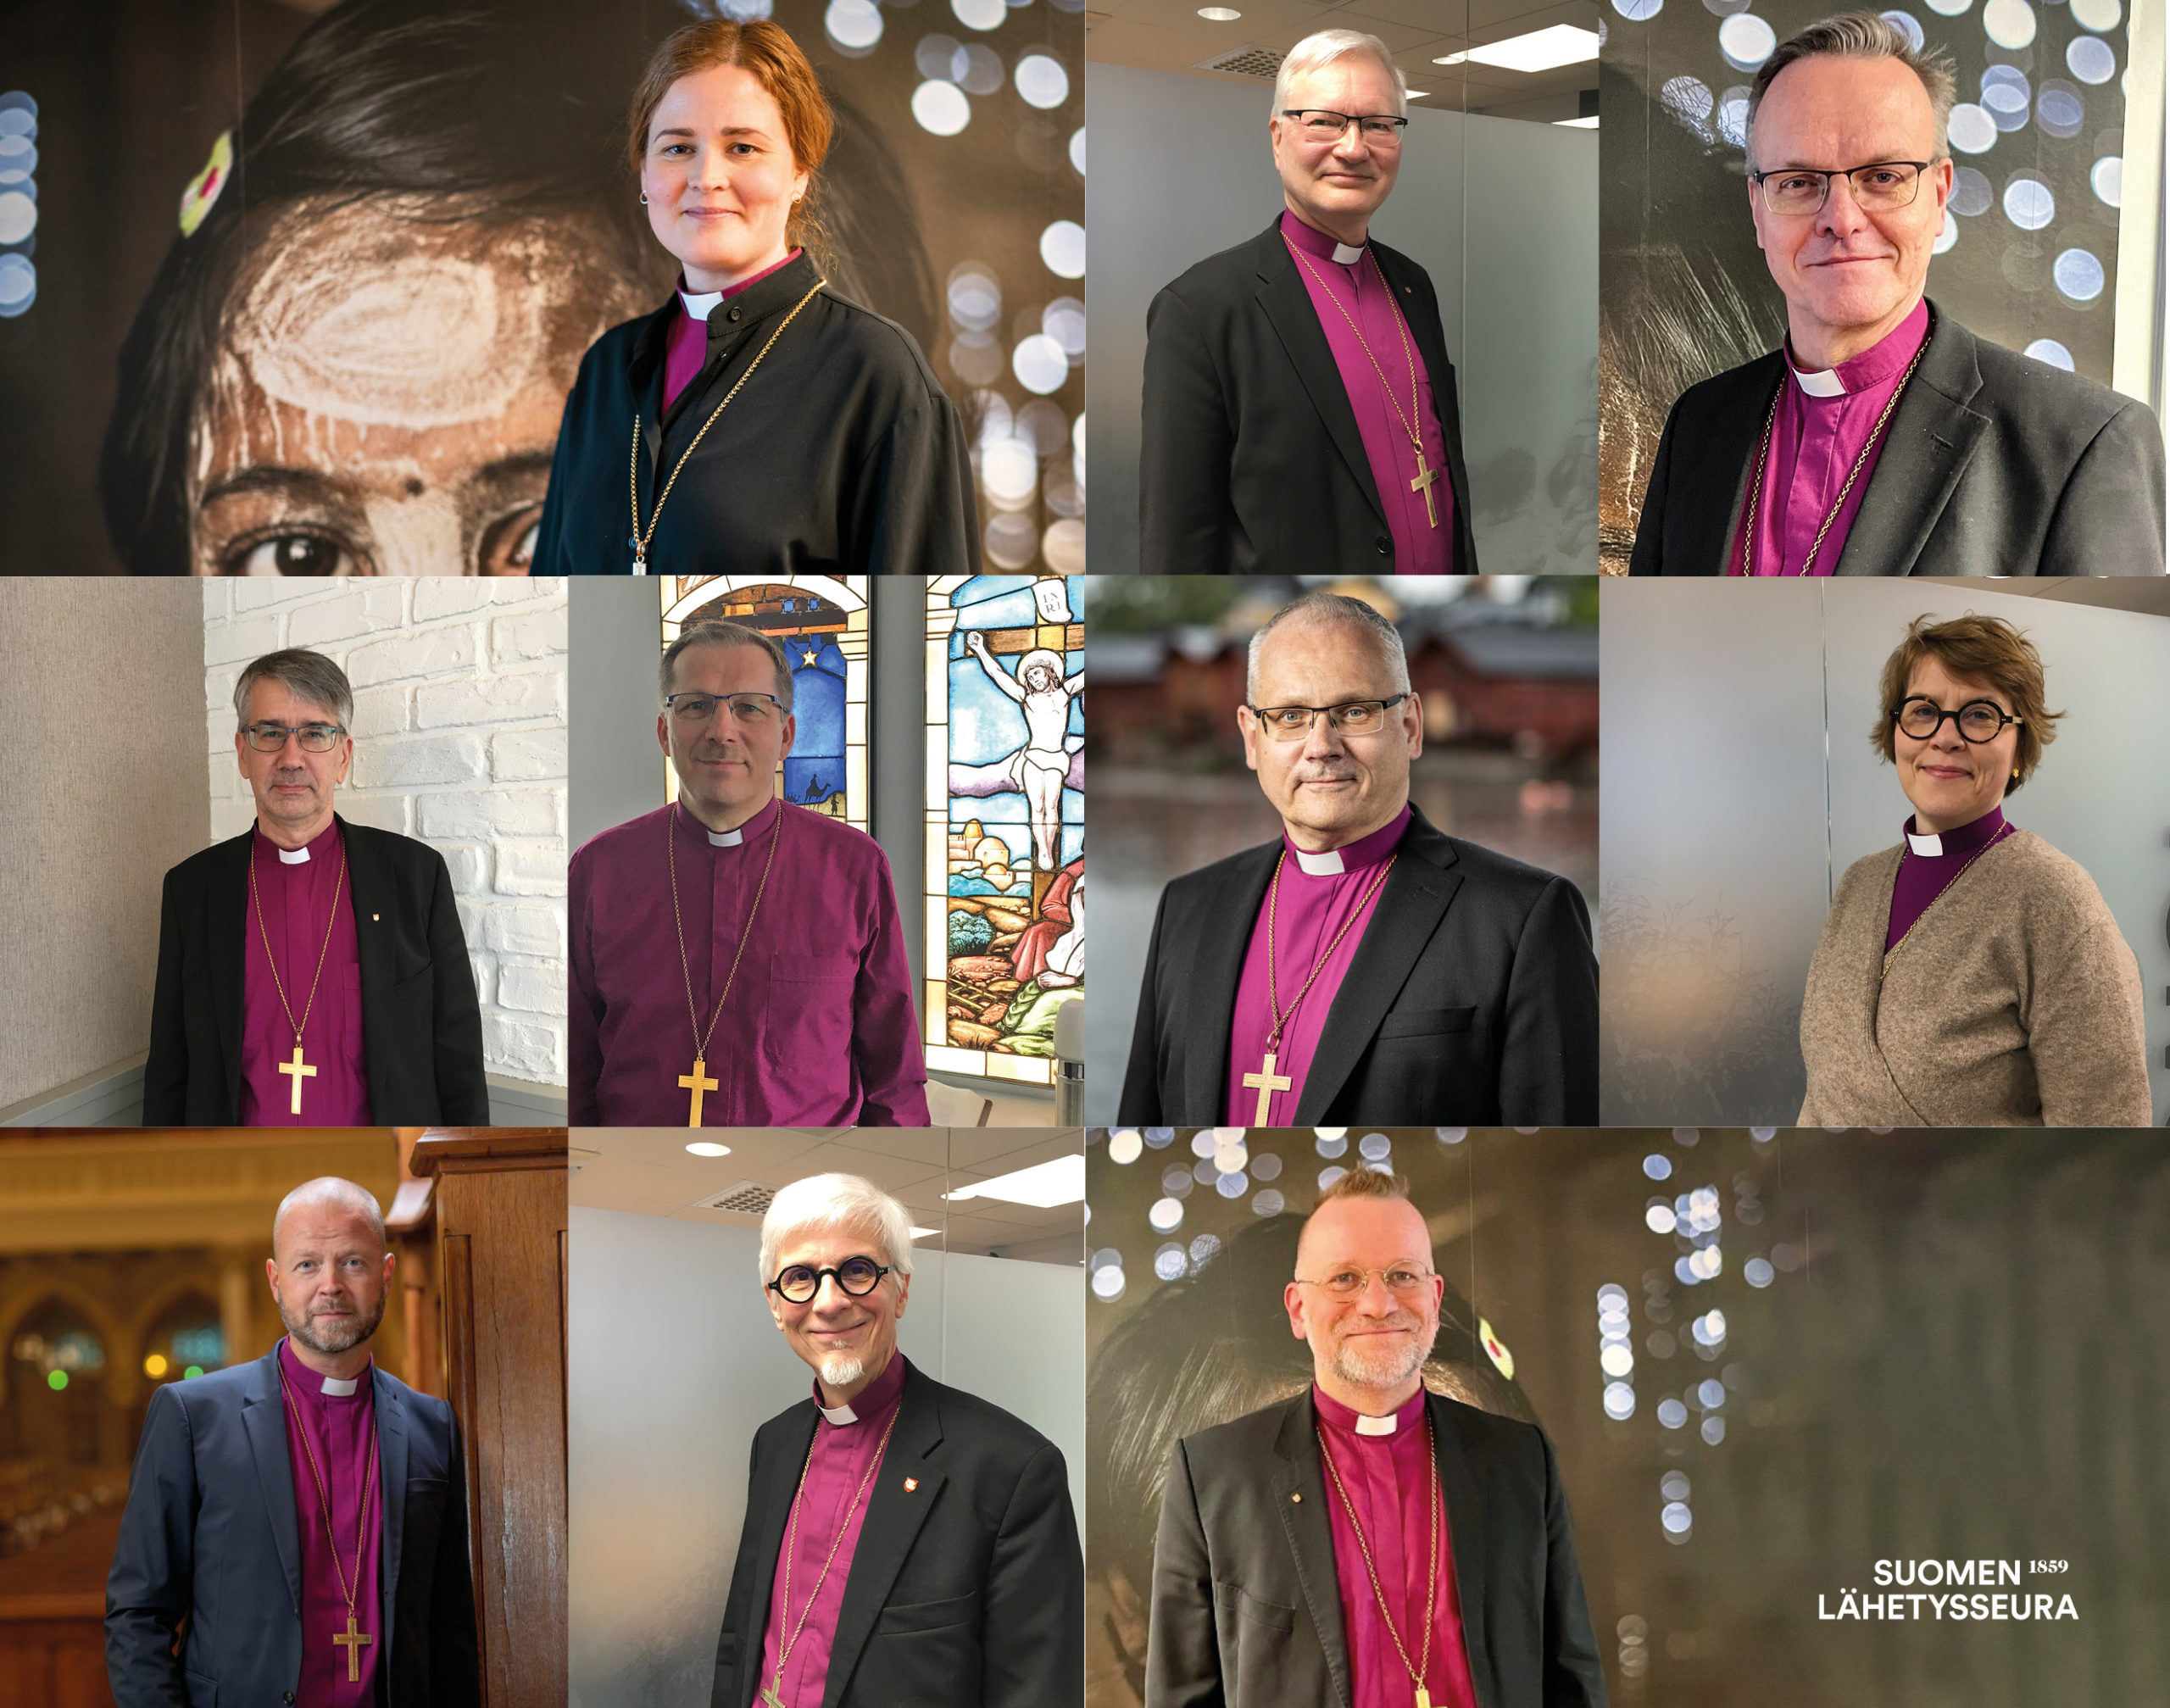 Kymmenen piispan kuvat kollaasina